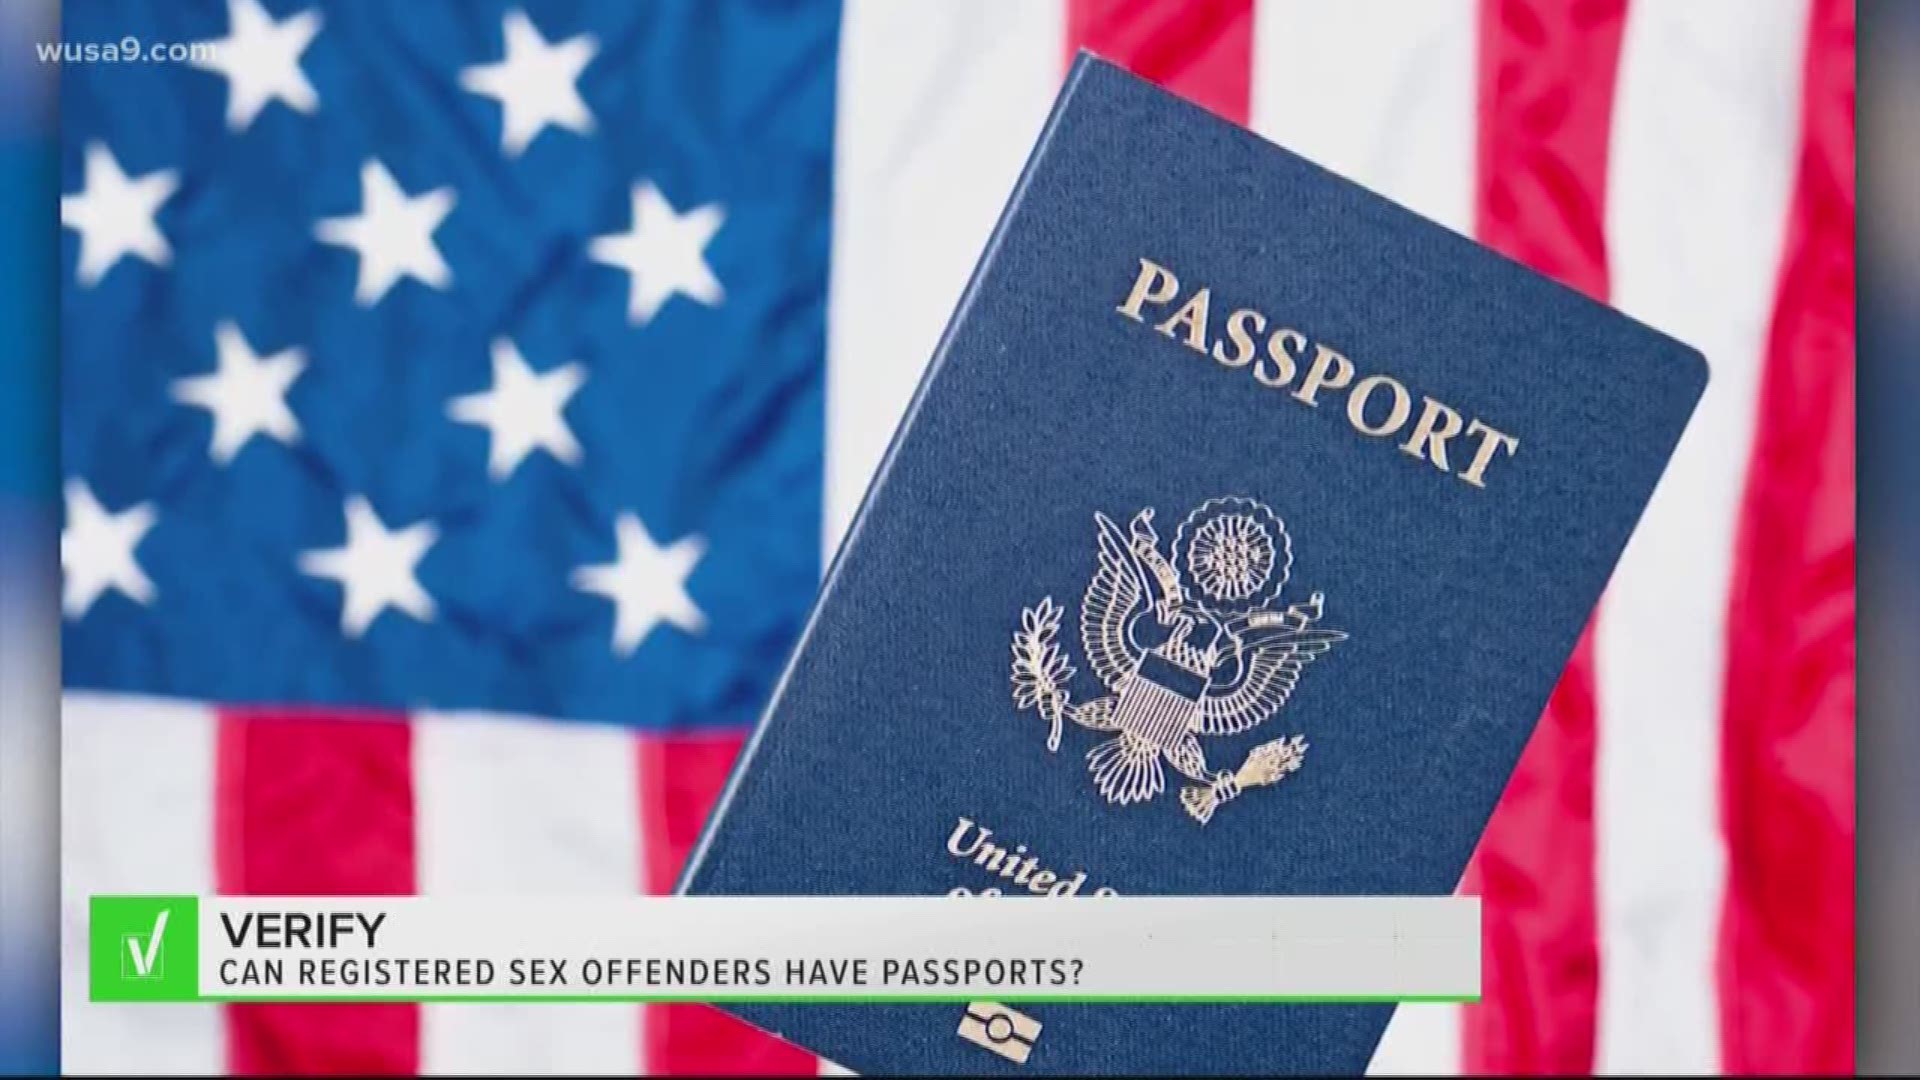 Verify Can A Registered Sex Offender Obtain A Passport 6827